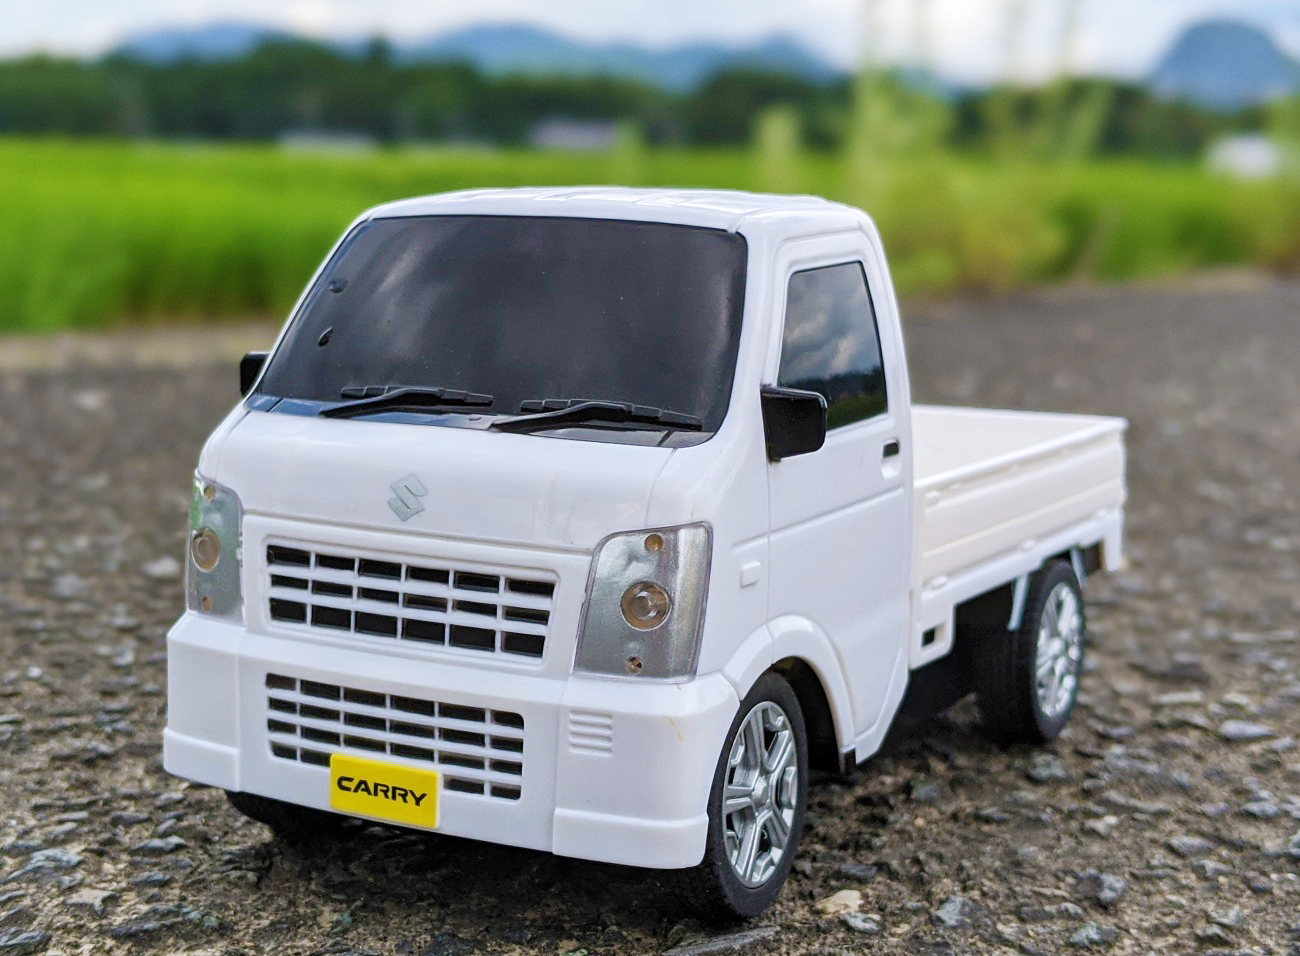 SUZUKI承認】2000円以下で買える「軽トラR/C」が本格的で超楽しい